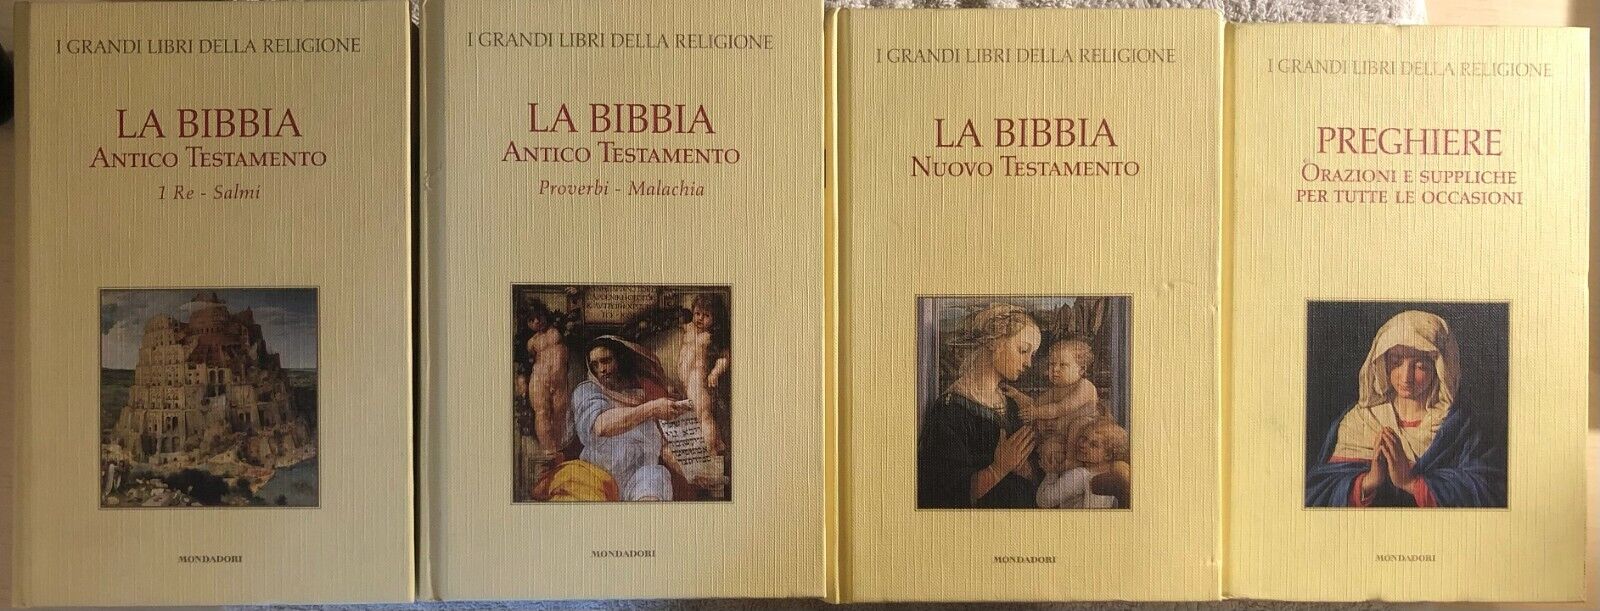 La Bibbia I grandi libri della religione 1-3-4-14 di Aa.vv.,  2006,  Mondadori